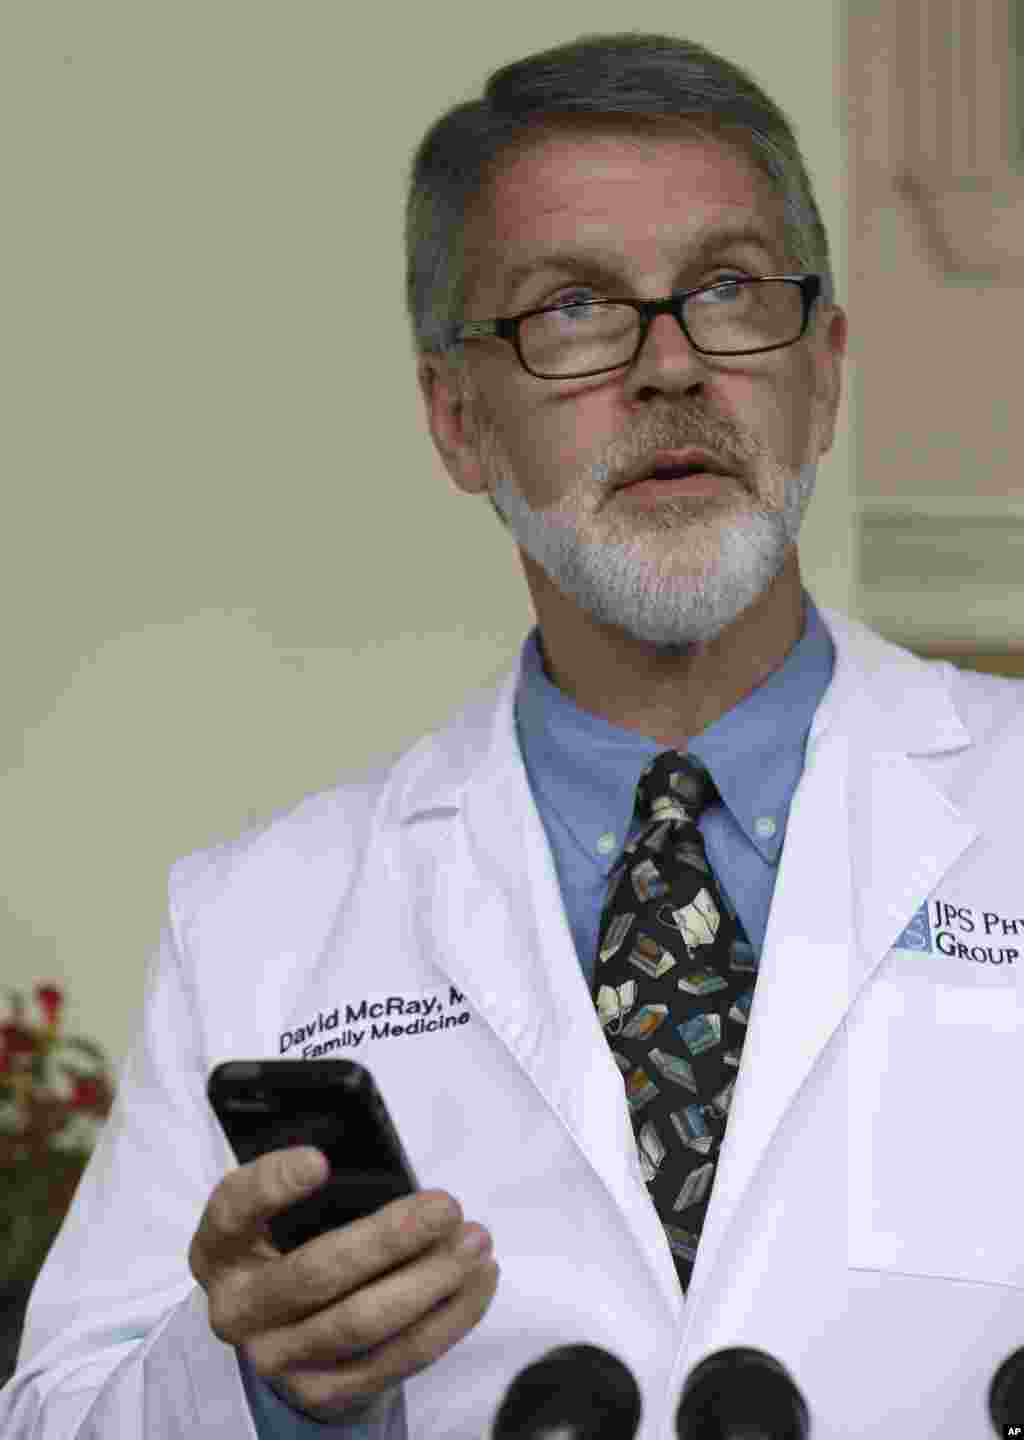 Bác sĩ David Mcray đọc một tin nhắn gần đây từ Bác sĩ Kent Brantly gởi tới trong một cuộc họp báo. Bác sĩ người Mỹ Kent Brantly chữa trị cho các bệnh nhân Ebola ở Liberia đã có xét nghiệm dương tính với loại virus gây chết người này.